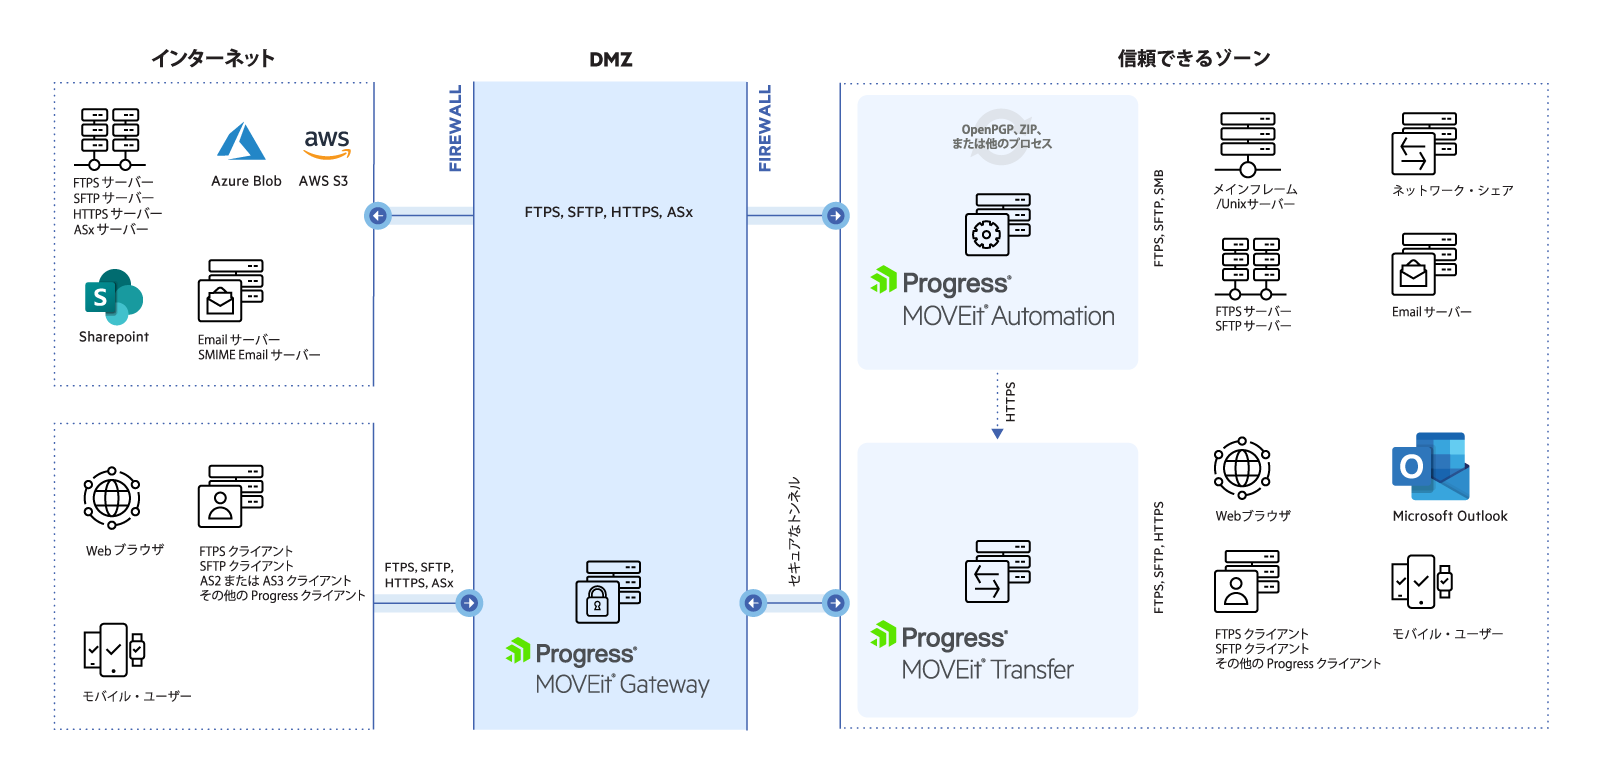 MOVEit Gateway を DMZ 内に設置した場合の、MOVEit アーキテクチャダイアグラム。インターネットからのトラフィックは、DMZ 内の MOVEit Gateway を介して、セキュアなトンネル経由で信頼できるゾーンである安全な内部ネットワークに到達します。